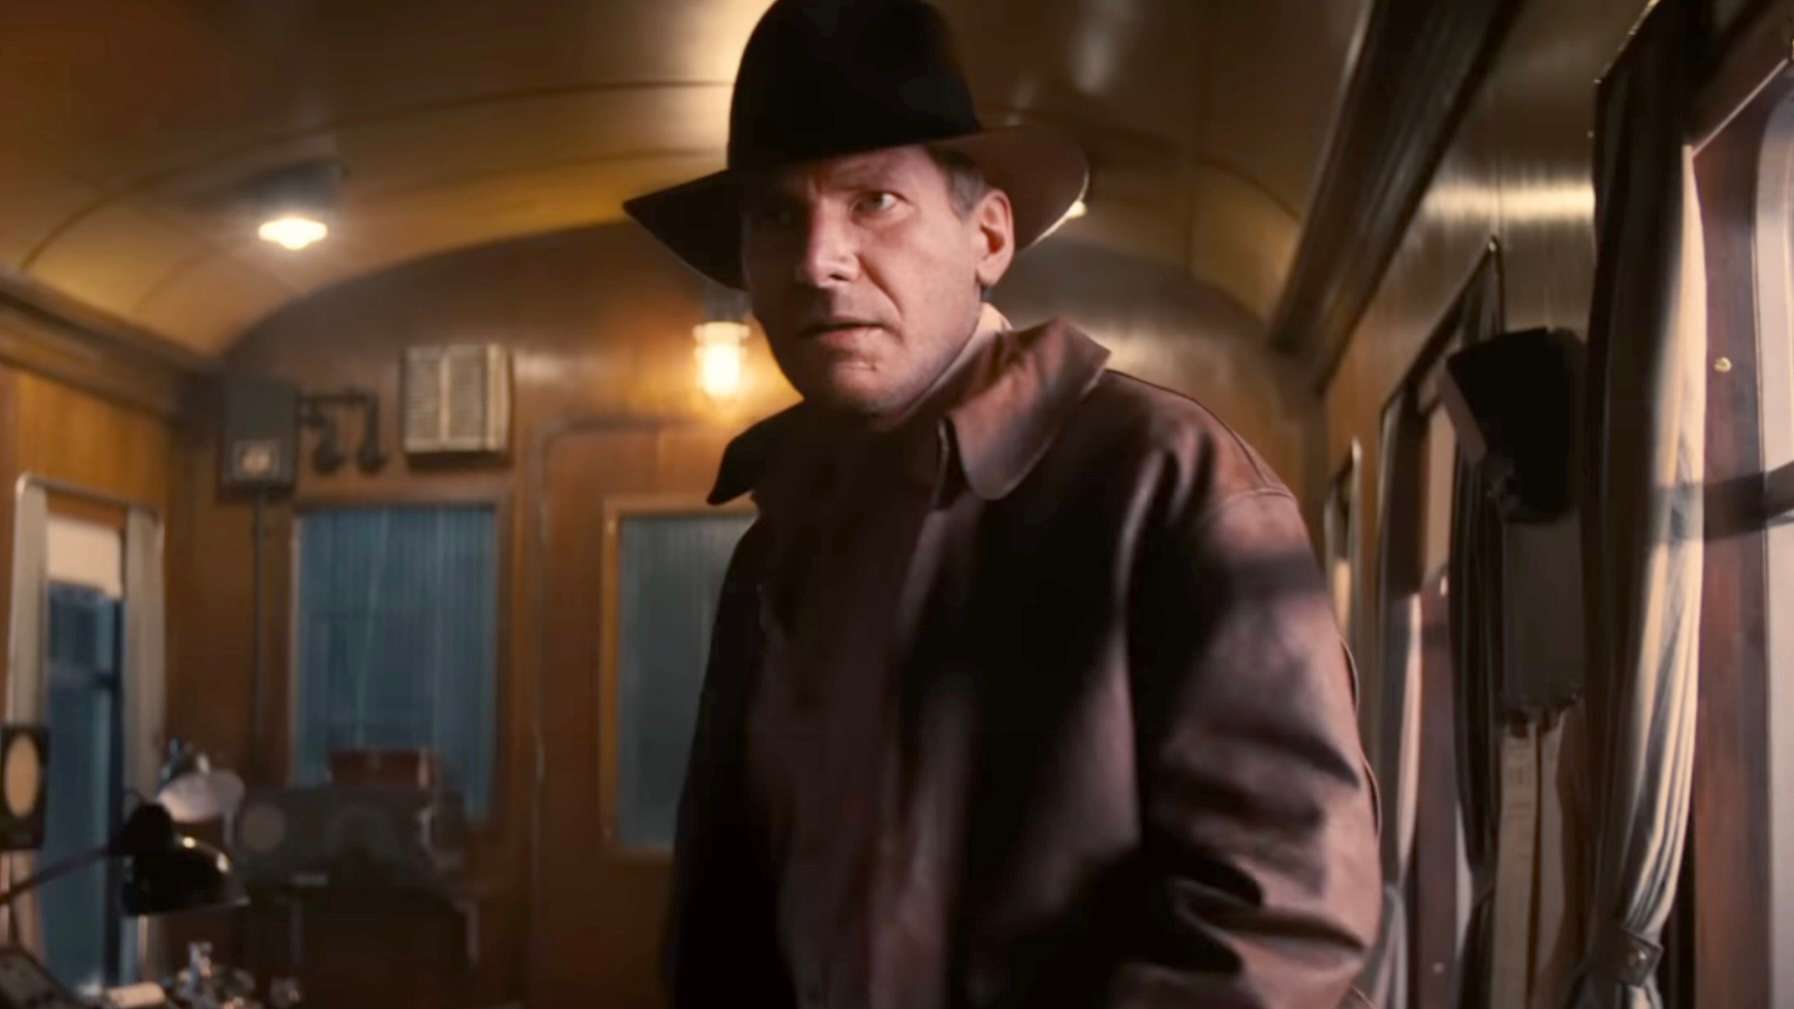 De-aged Indiana Jones in Dial of Destiny.